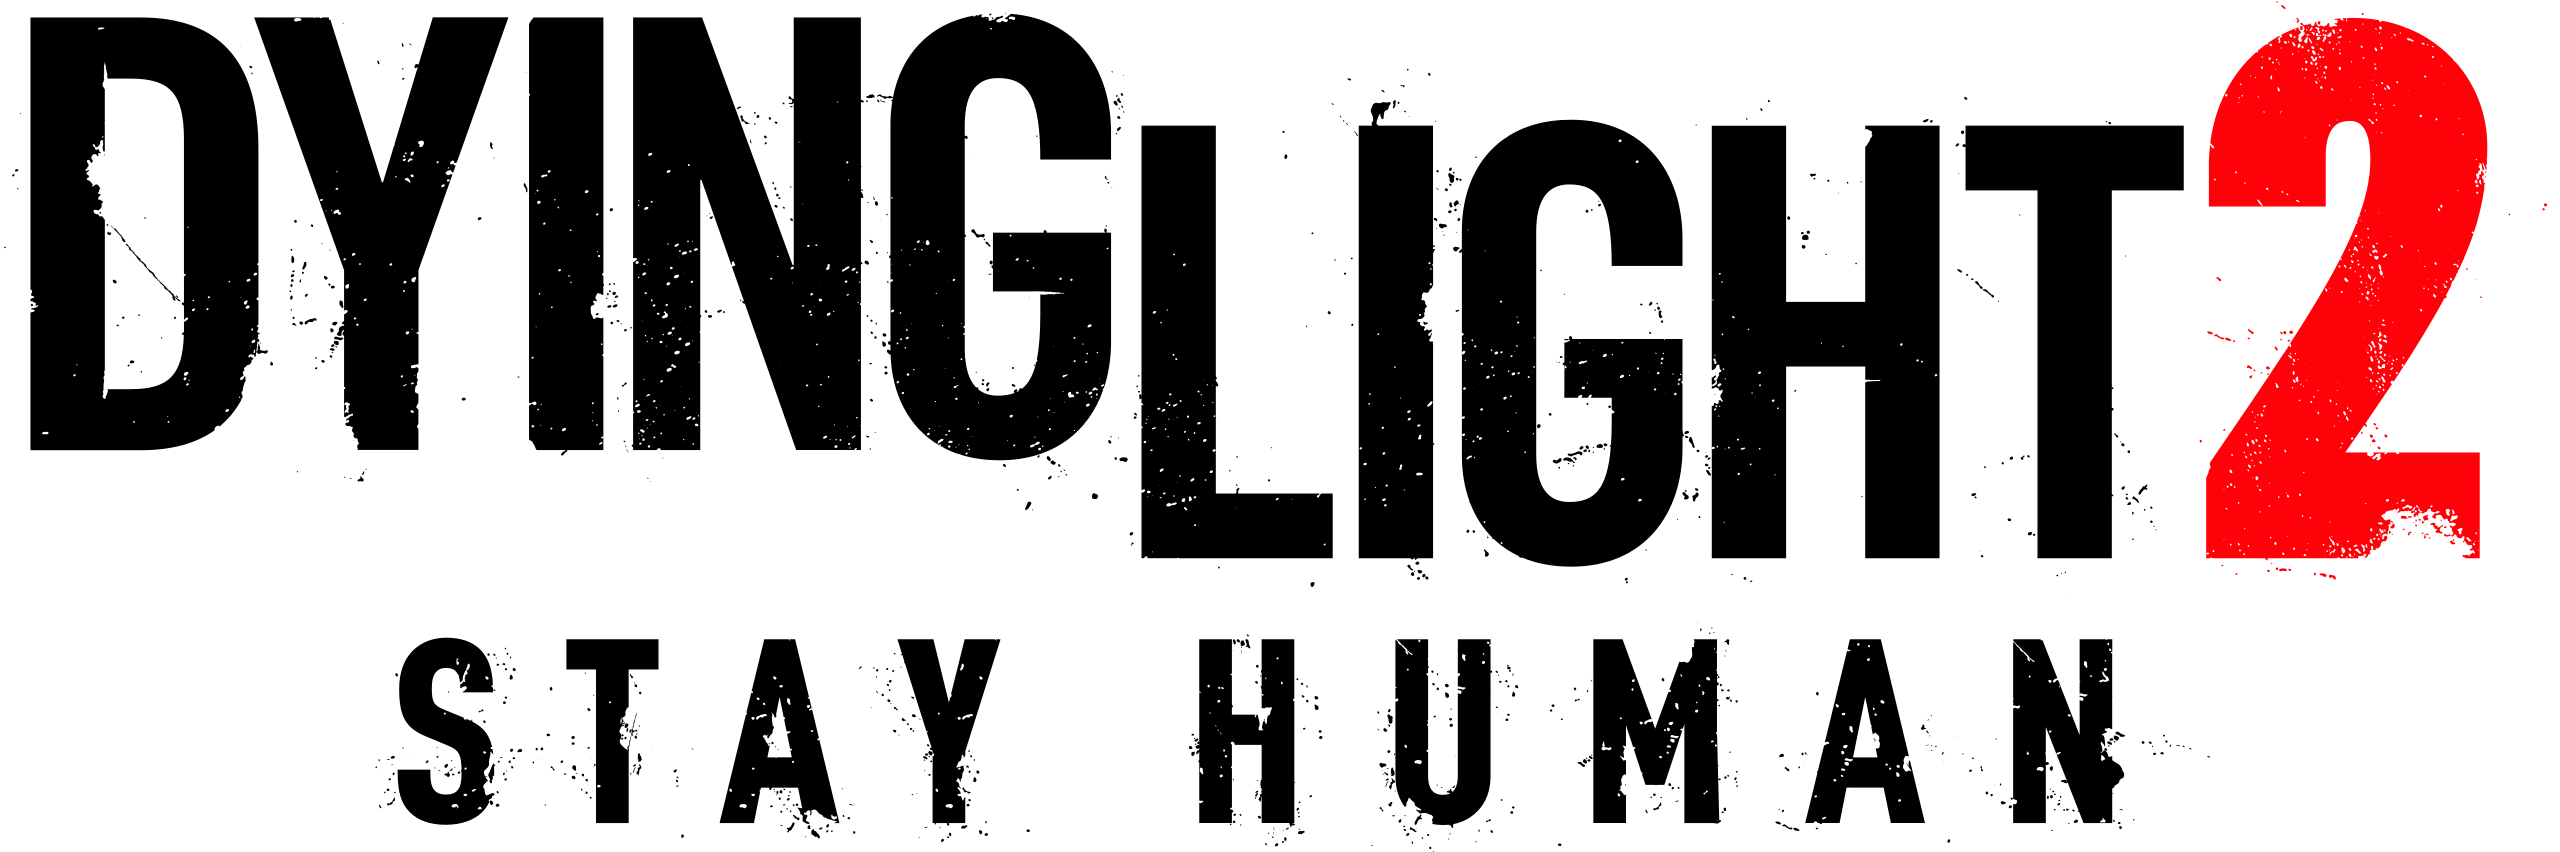 Dying Light 2 logo